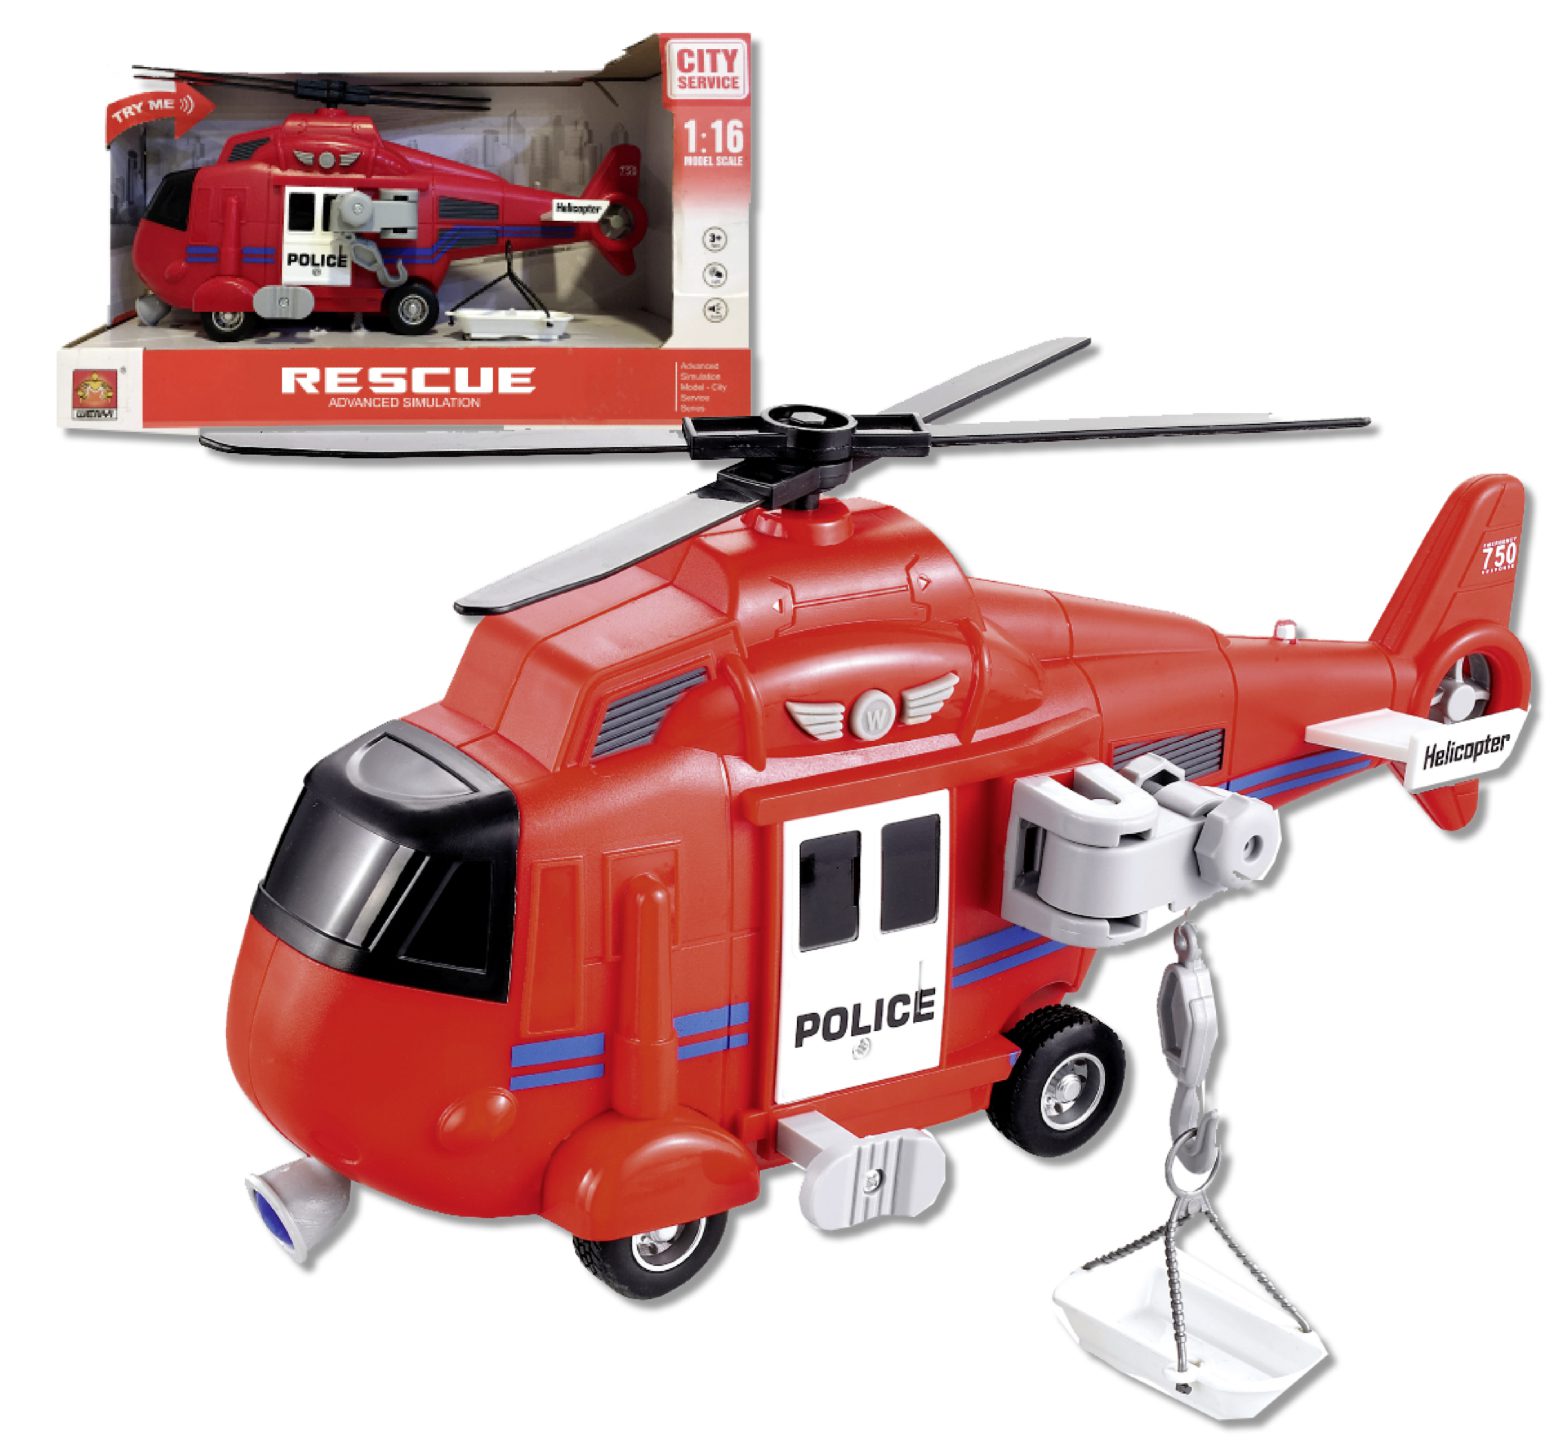 Ελικόπτερο κόκκινο friction διάσωσης, κλίμακας 1:16 με μπαταρία και ήχους που γυρίζει ο έλικας και ανοίγει η πλαϊνή πόρτα και από τον γάντζο ανεβοκατεβαίνει το φορείο.